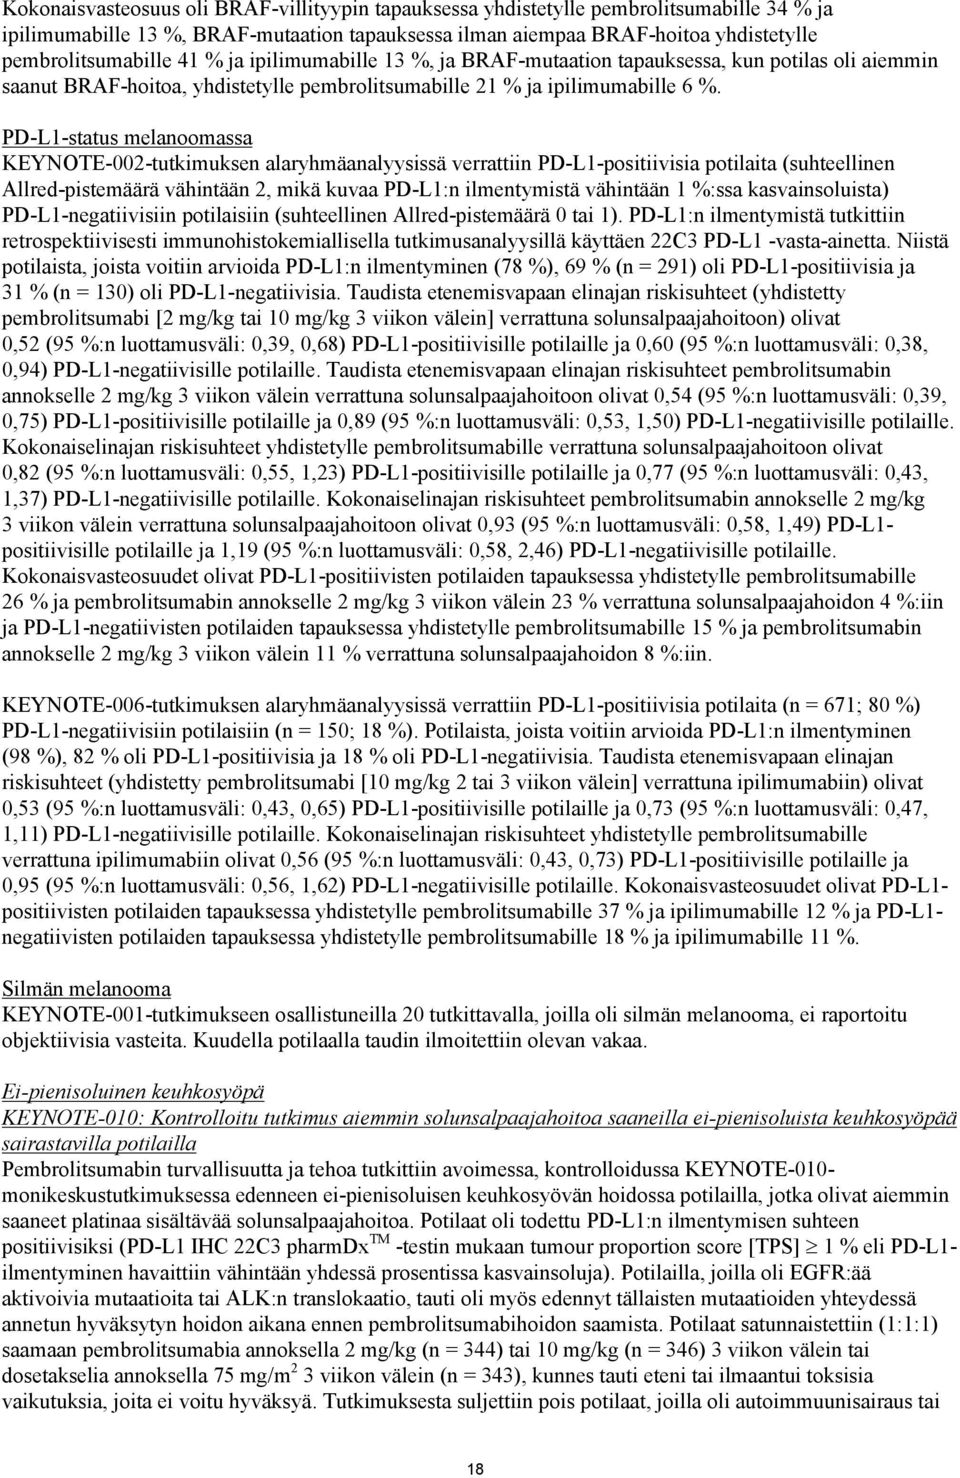 PD-L1-status melanoomassa KEYNOTE-002-tutkimuksen alaryhmäanalyysissä verrattiin PD-L1-positiivisia potilaita (suhteellinen Allred-pistemäärä vähintään 2, mikä kuvaa PD-L1:n ilmentymistä vähintään 1